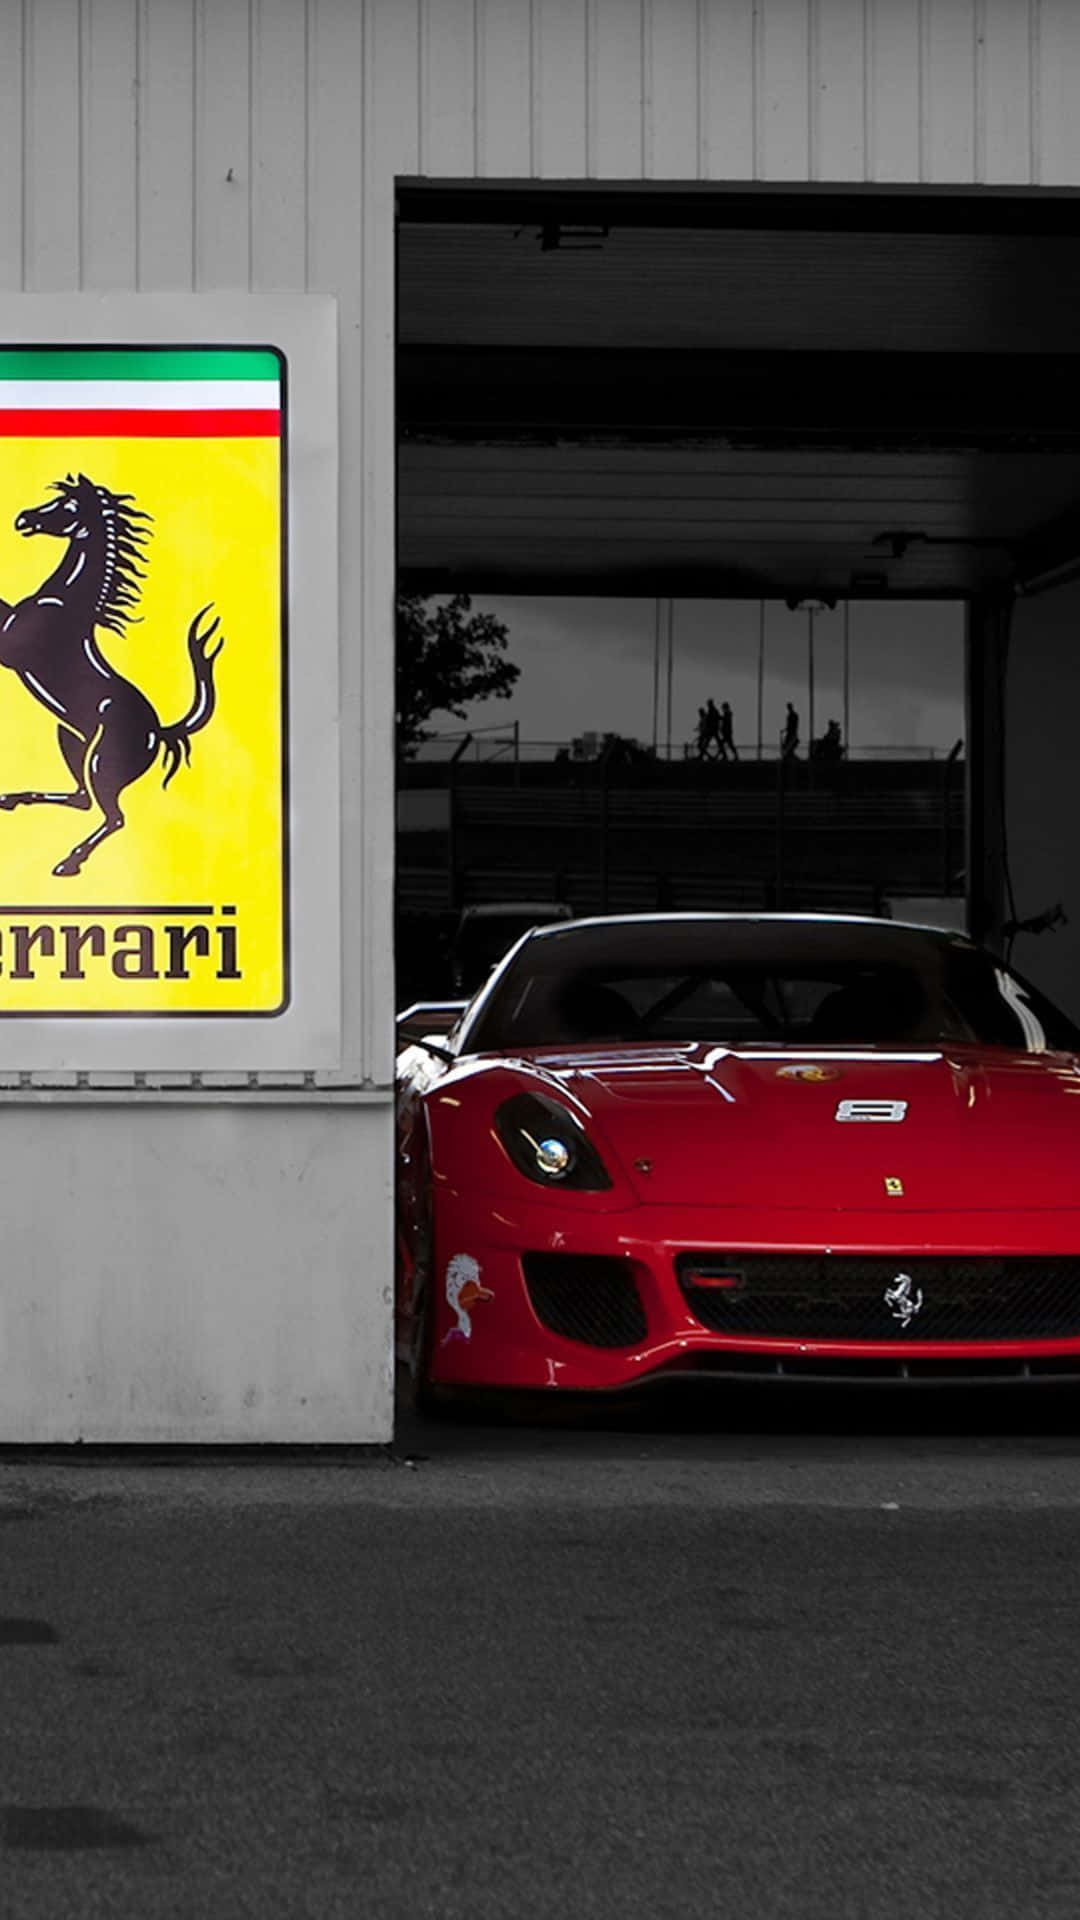 Gehensie Mit Dem Eleganten Design Des Ferrari Iphone X Schon Jetzt Einen Schritt Voraus! Wallpaper